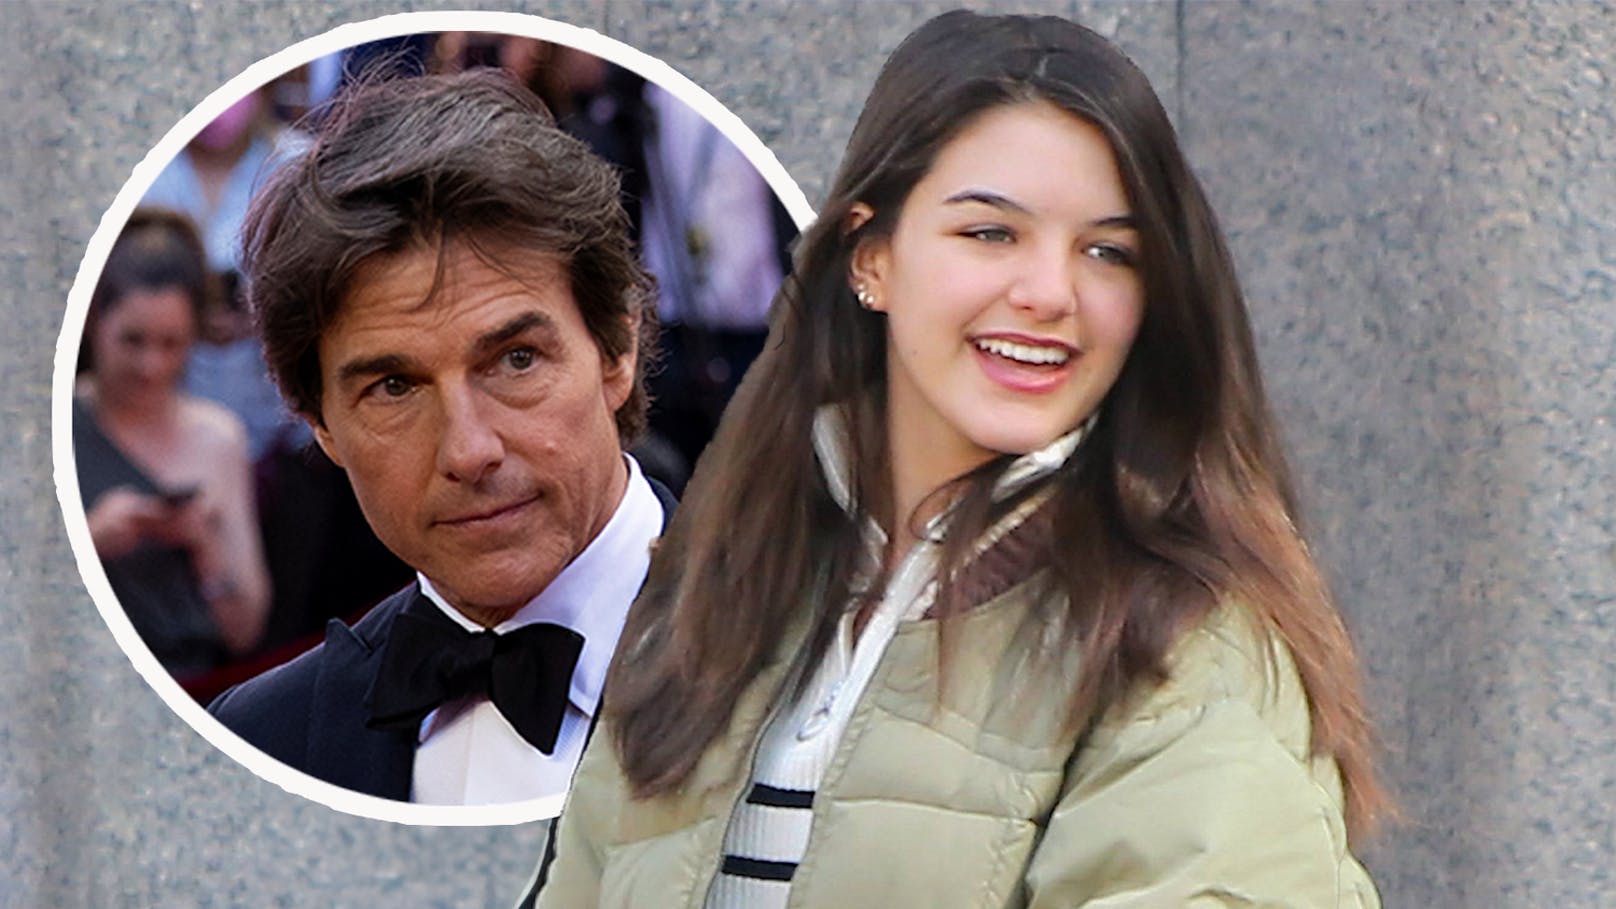 Tom Cruise Tochter (18) beim Knutschen erwischt